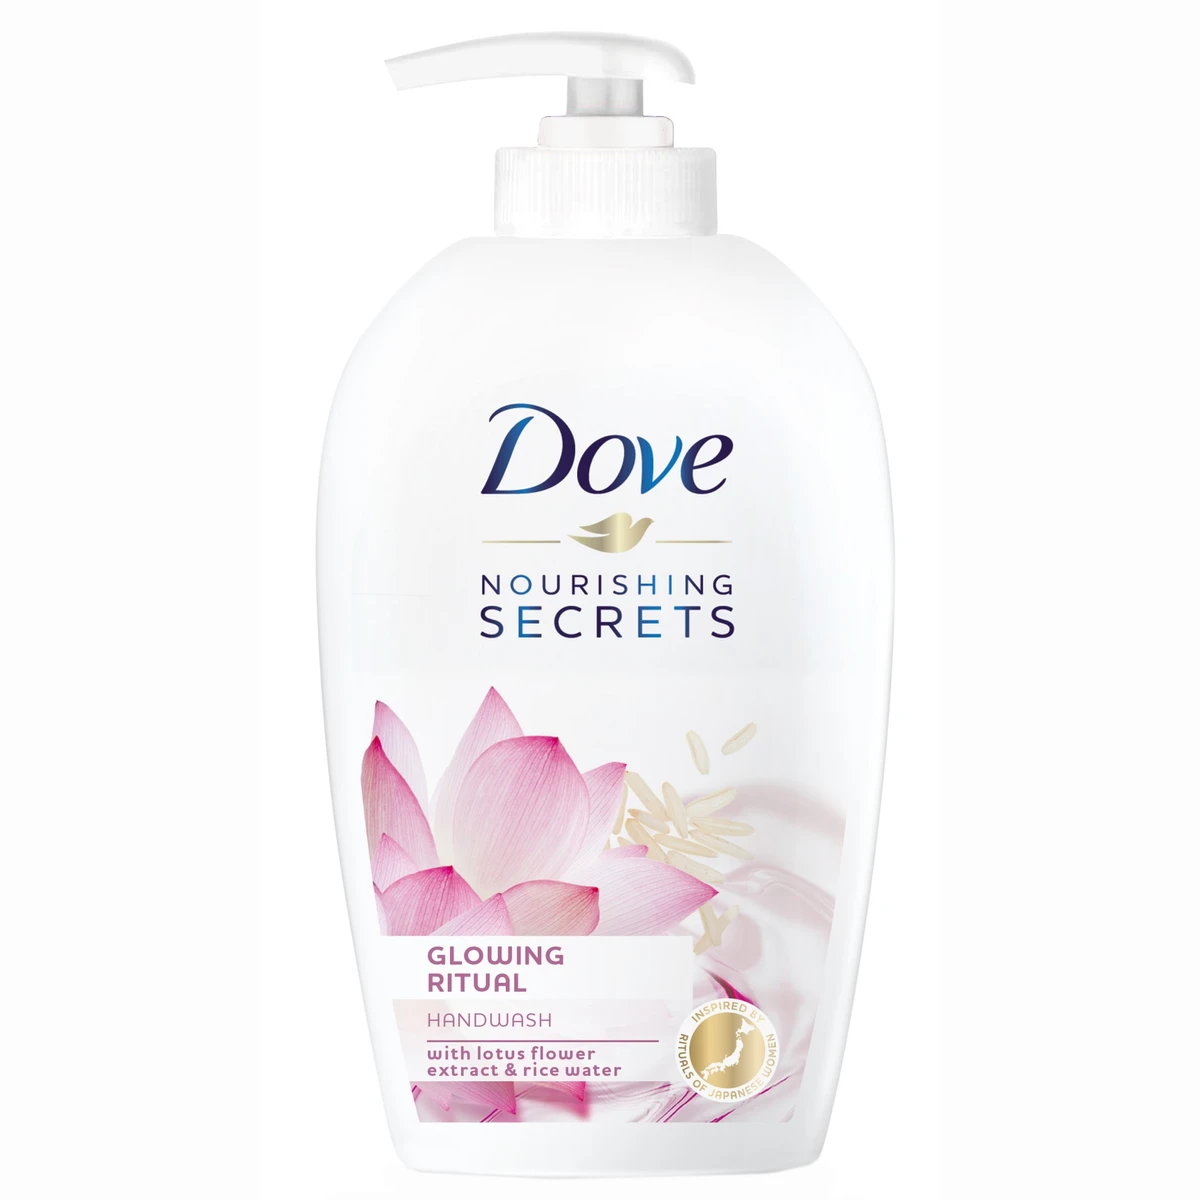 Dove Nourishing Secrets Glowing Ritual folyékony szappan, Lótusz virág és rizsvíz, 250 ml